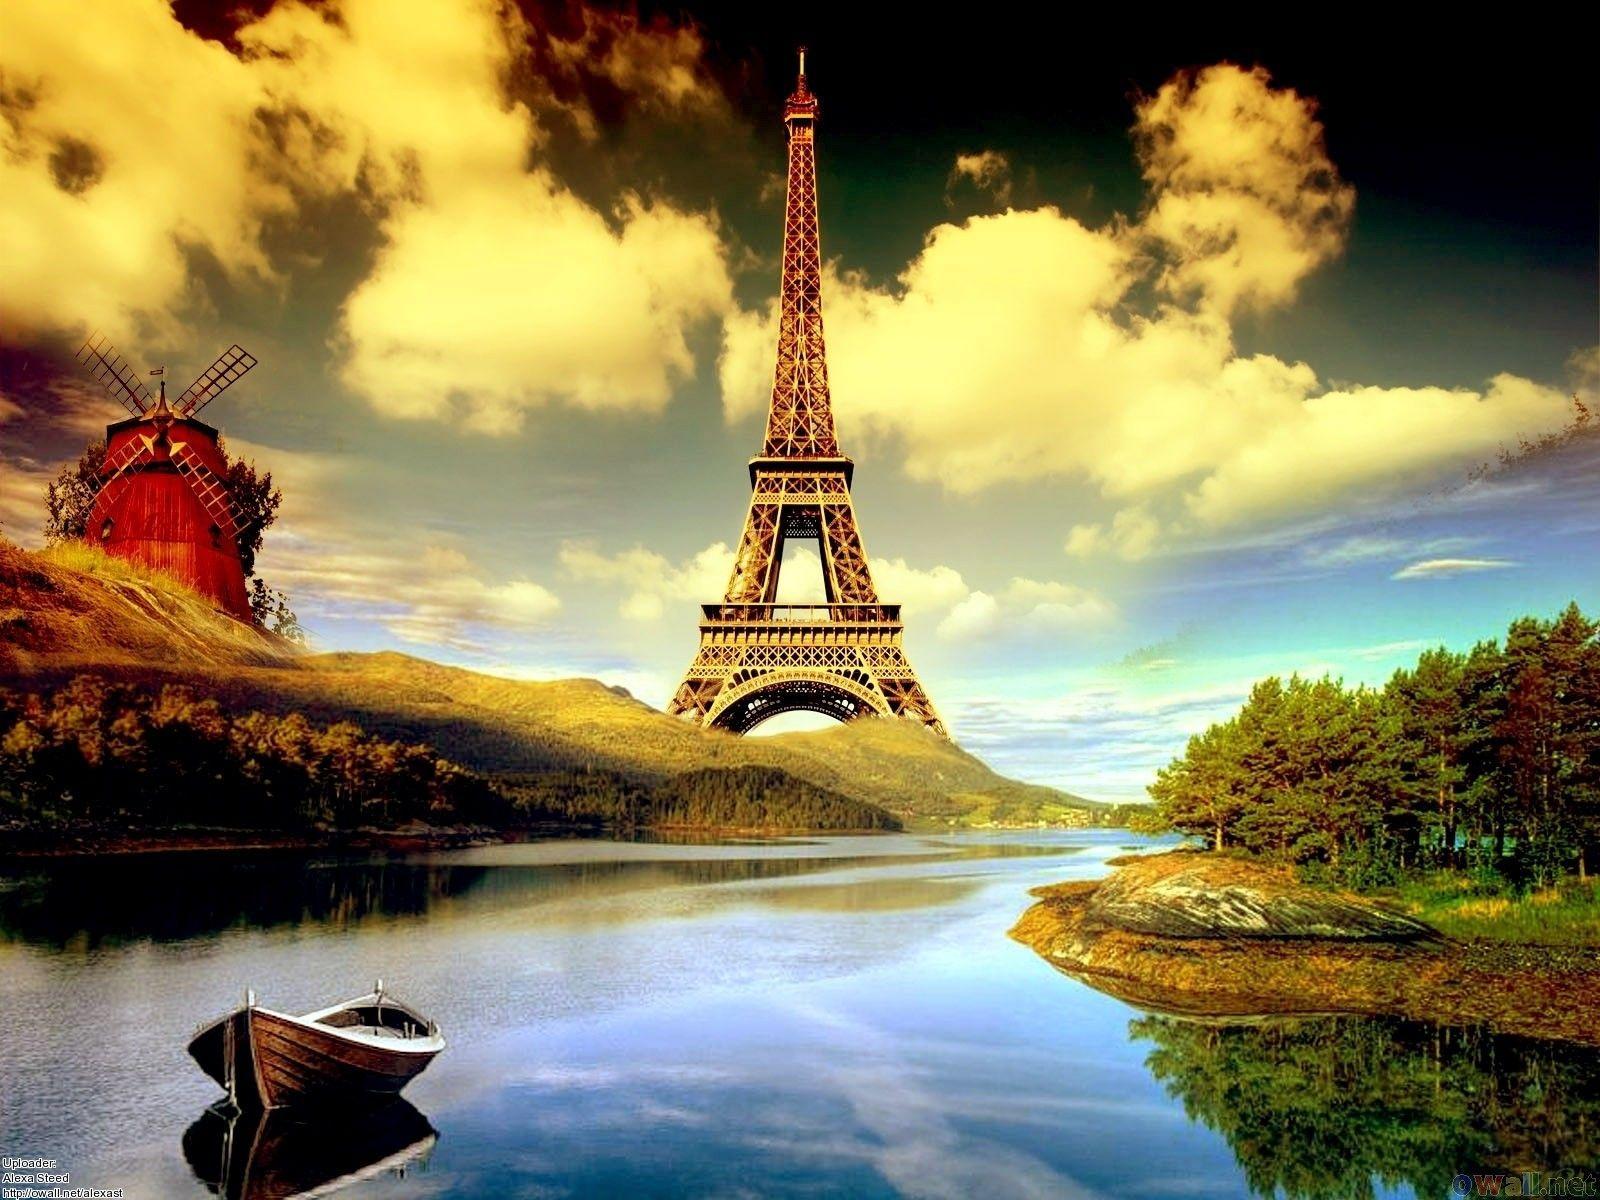 Eiffel Tower Cartoon HD Desktop Wallpaper 1600x1200PX Wallpaper